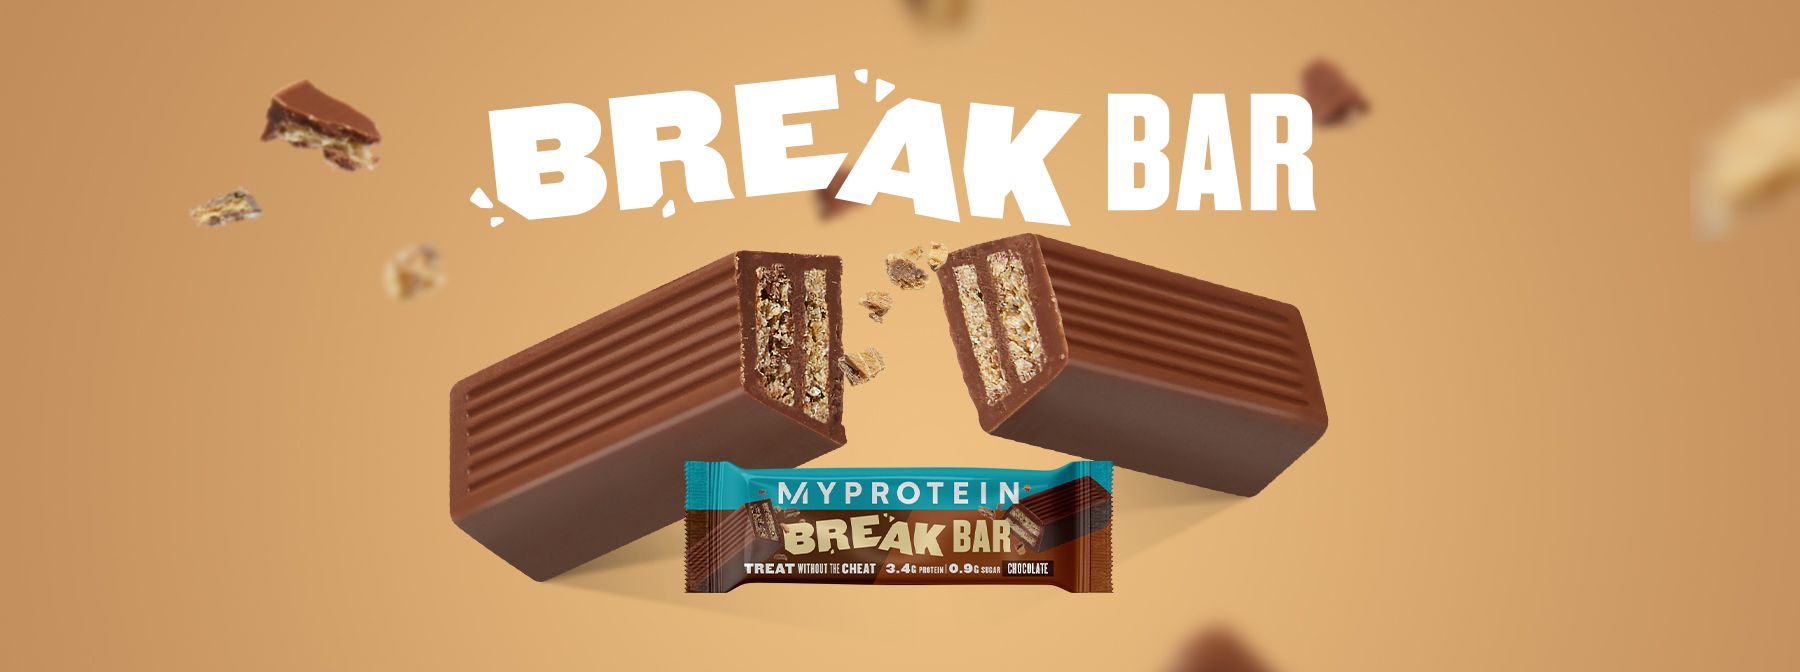 Break Bar: Ώρα Για Πρωτεϊνικό Σνακ